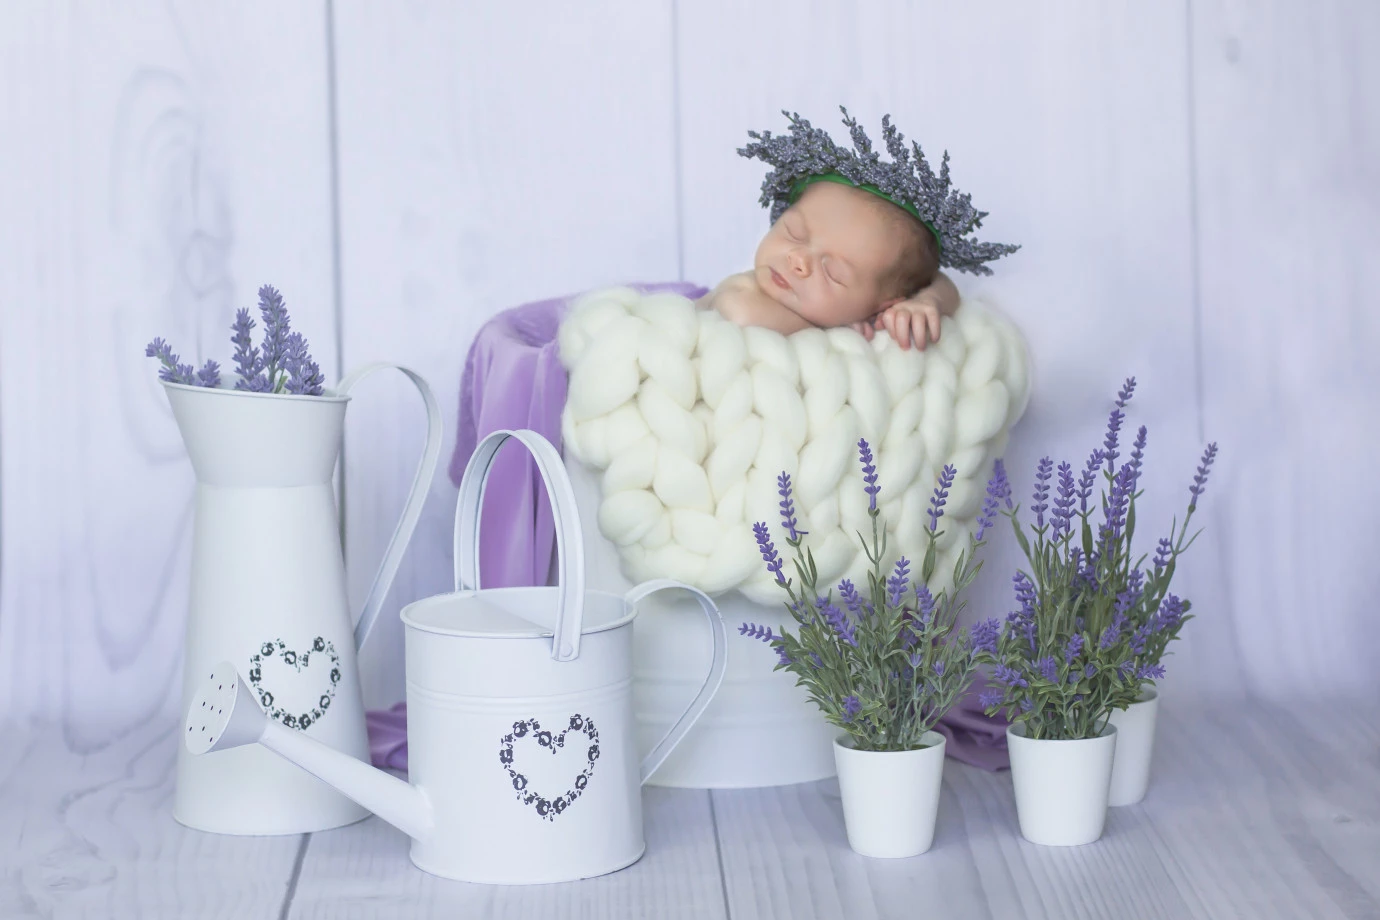 zdjęcia lodz fotograf lilia-paratka portfolio zdjecia noworodkow sesje noworodkowe niemowlę